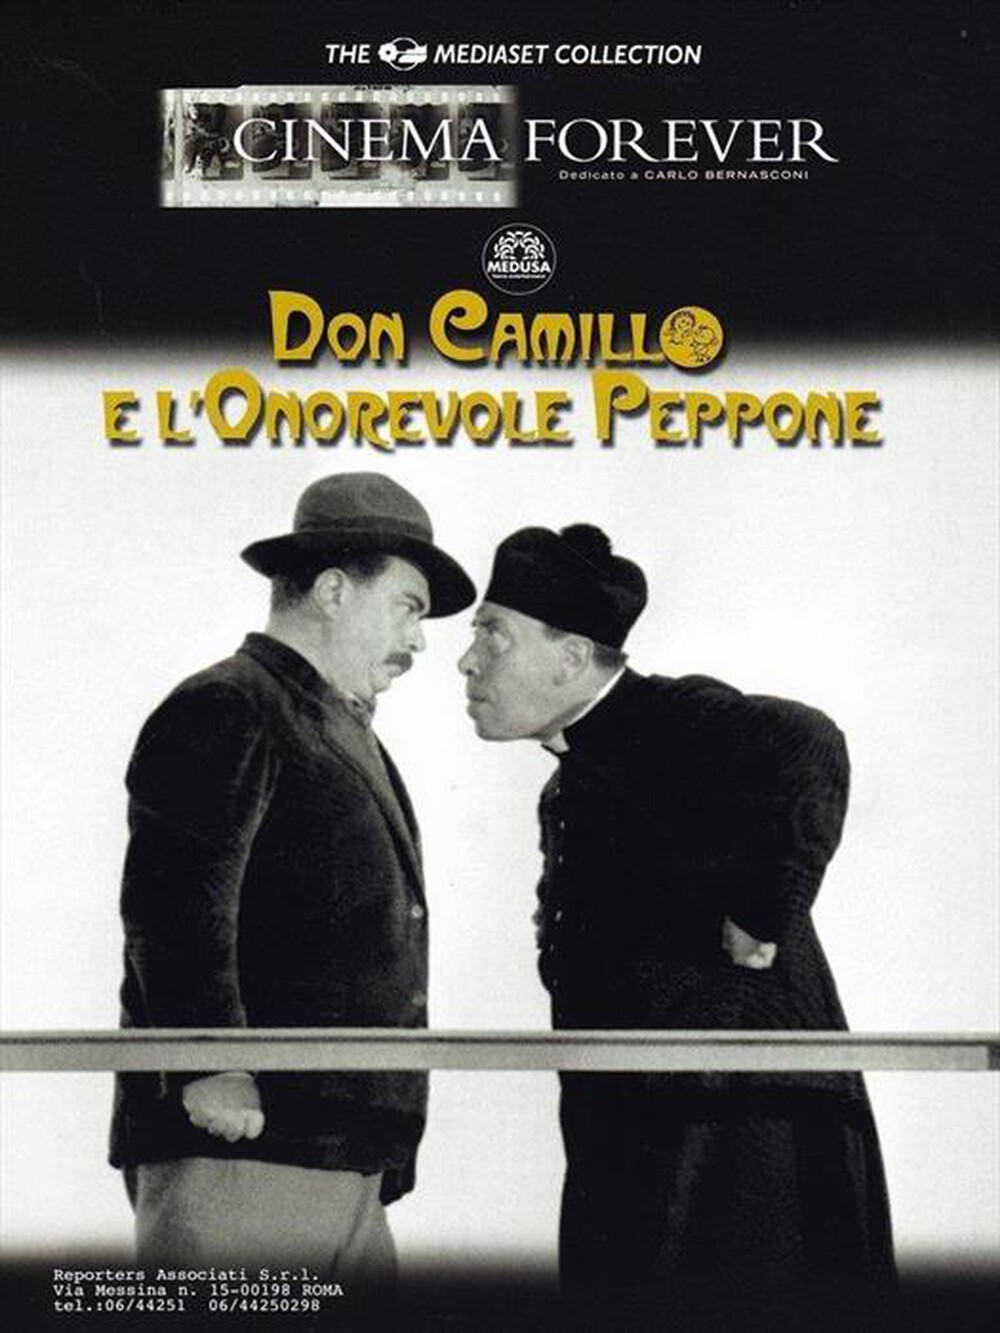 "CECCHI GORI - Don Camillo E L'Onorevole Peppone"